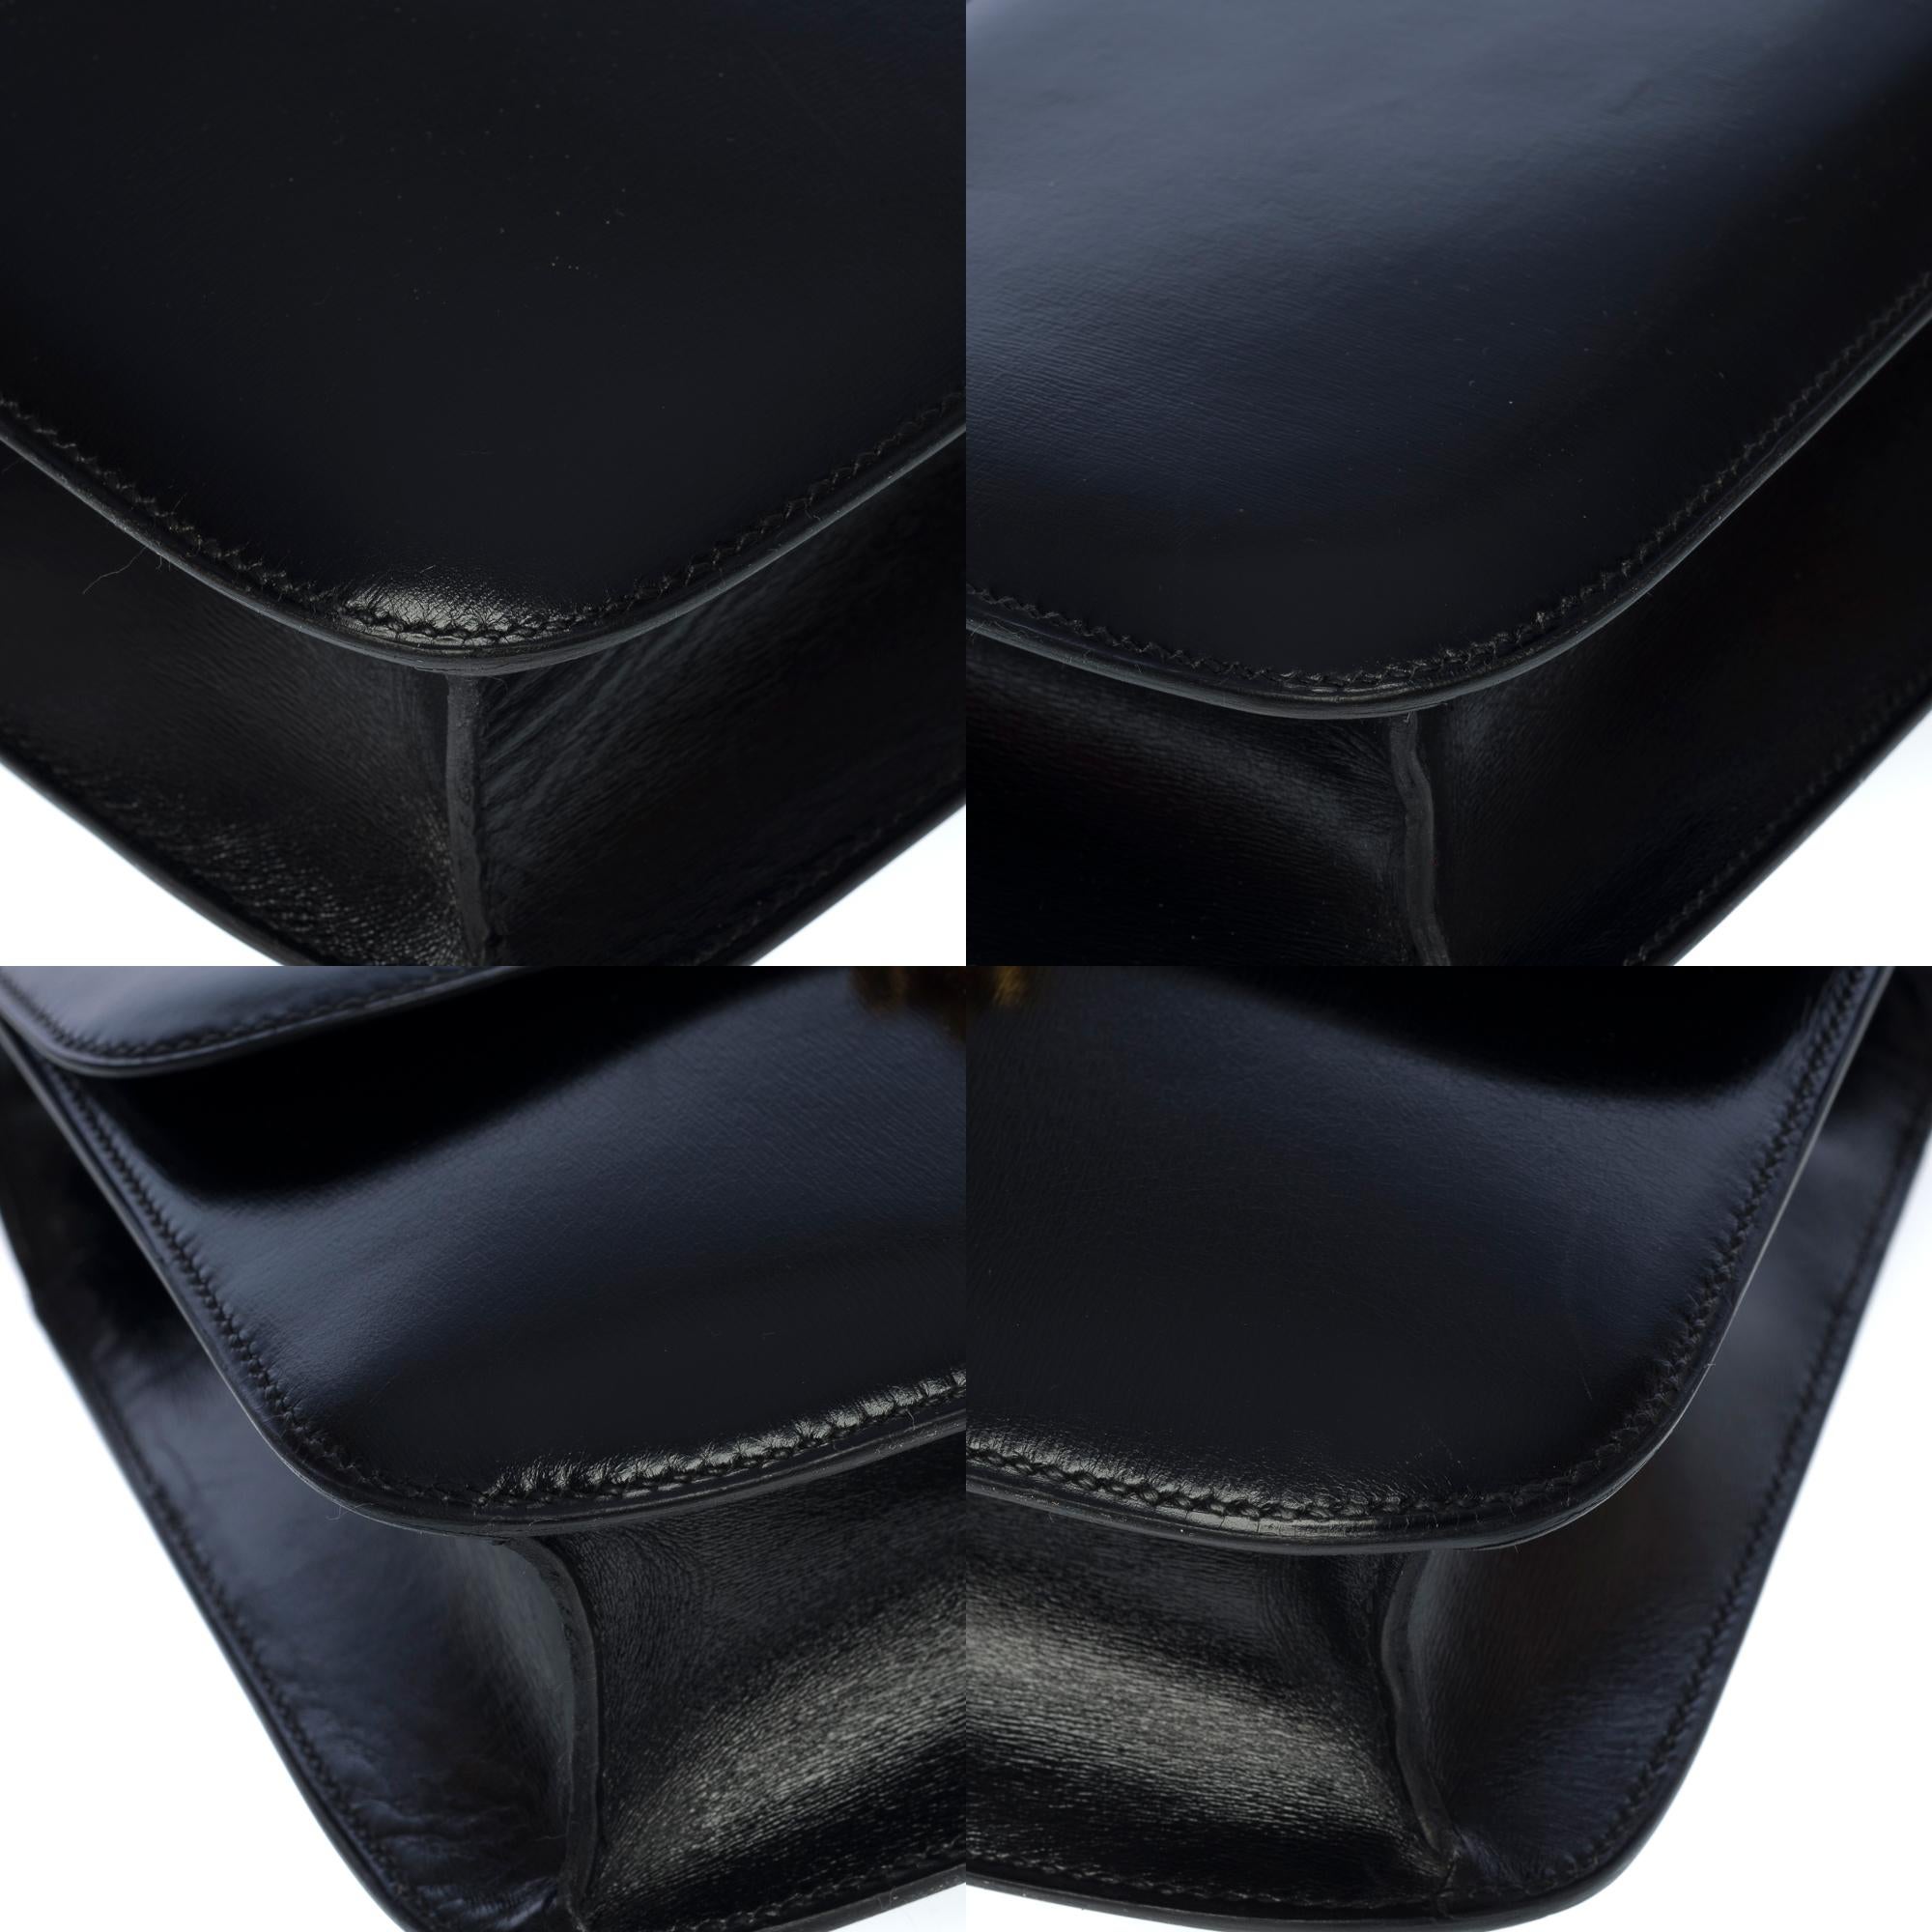 Stunning Hermes Constance 23 shoulder bag in black calfskin box leather, GHW 5